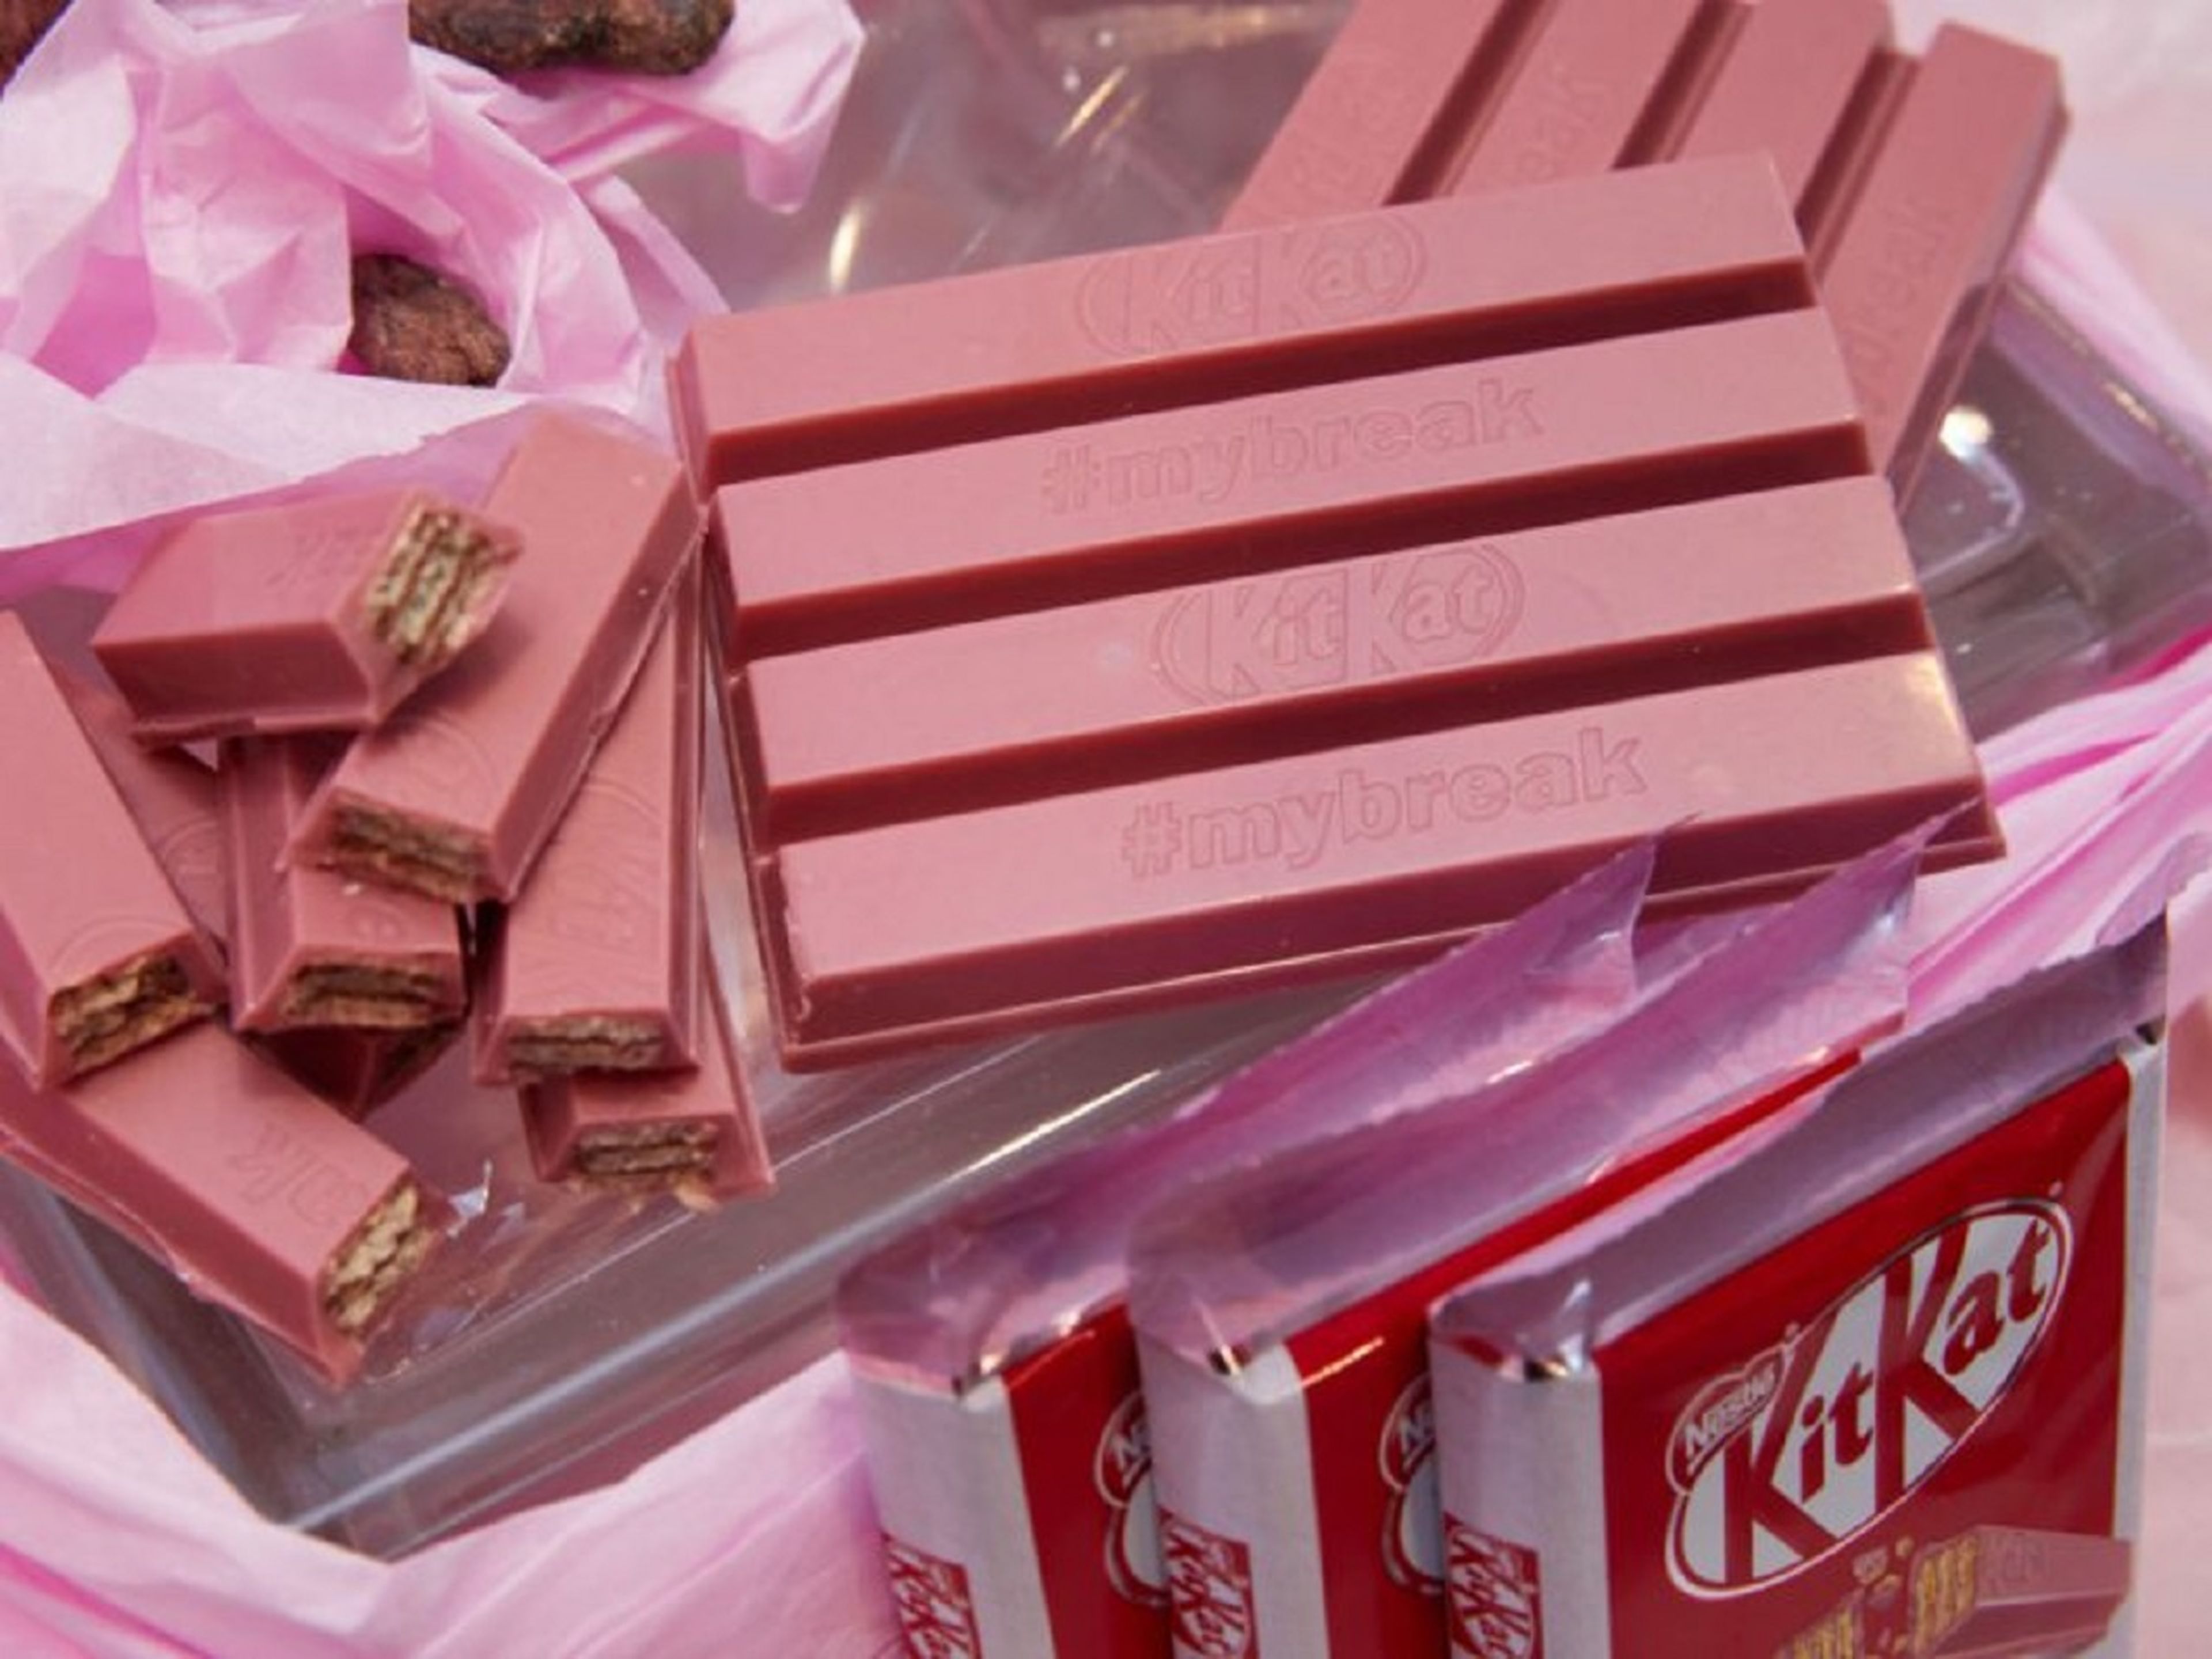 Al igual que el "KitKat Ruby" lanzado a inicios del 2018, el nuevo producto se lanzará inicialmente en Japón en otoño de 2019.